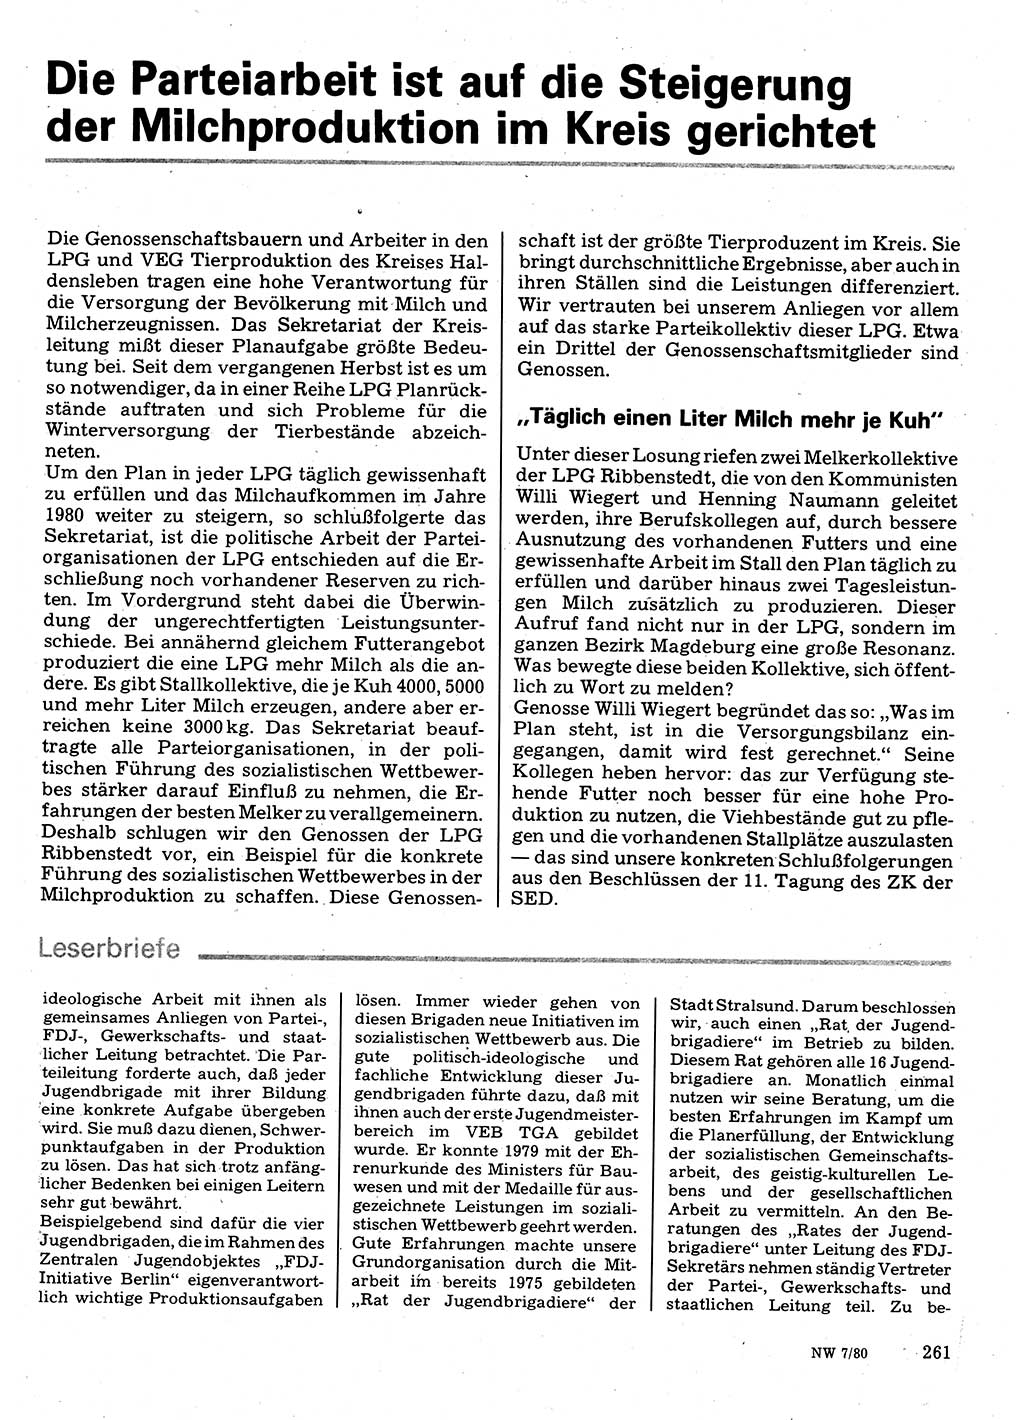 Neuer Weg (NW), Organ des Zentralkomitees (ZK) der SED (Sozialistische Einheitspartei Deutschlands) für Fragen des Parteilebens, 35. Jahrgang [Deutsche Demokratische Republik (DDR)] 1980, Seite 261 (NW ZK SED DDR 1980, S. 261)